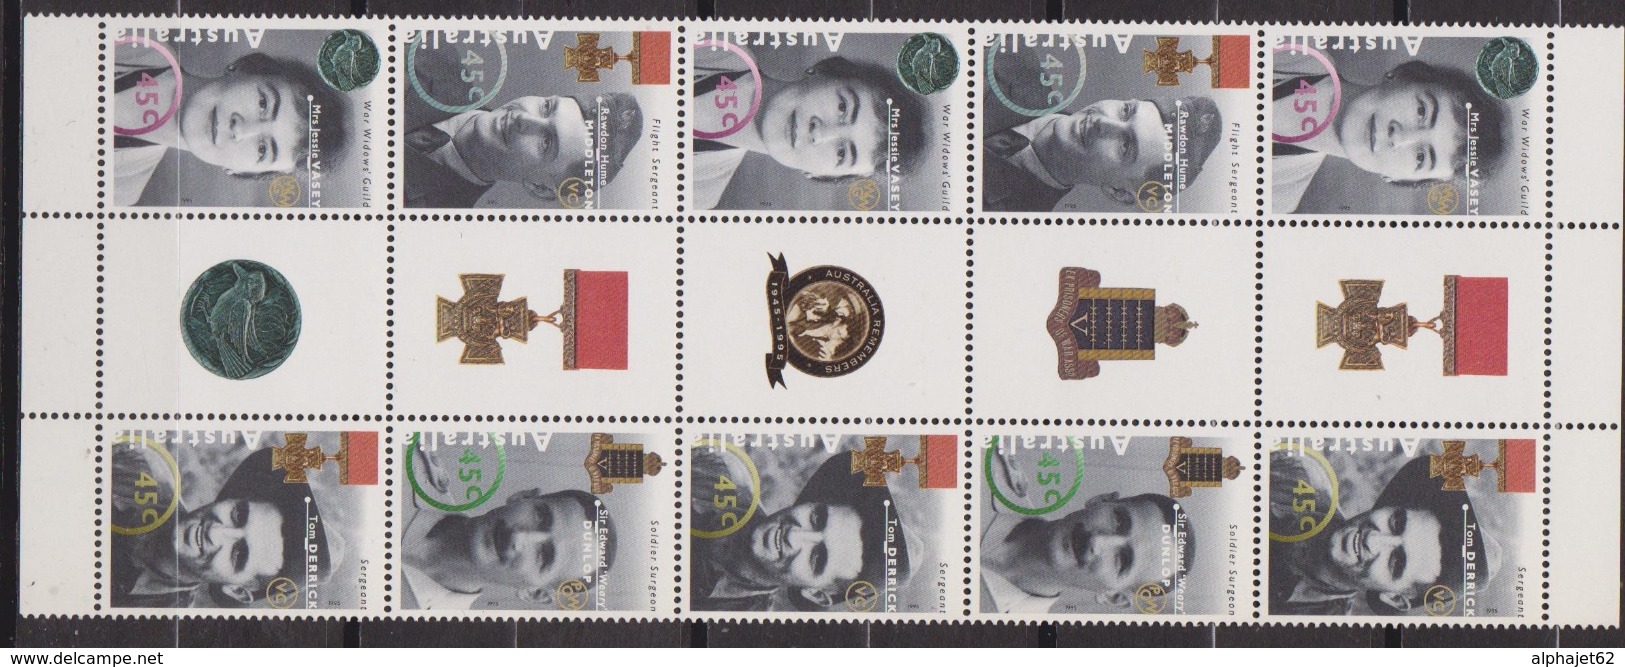 Héros De La Seconde Guerre Mondiale - AUSTRALIE - N° 1434 à 1437 ** - 1995 - Mint Stamps